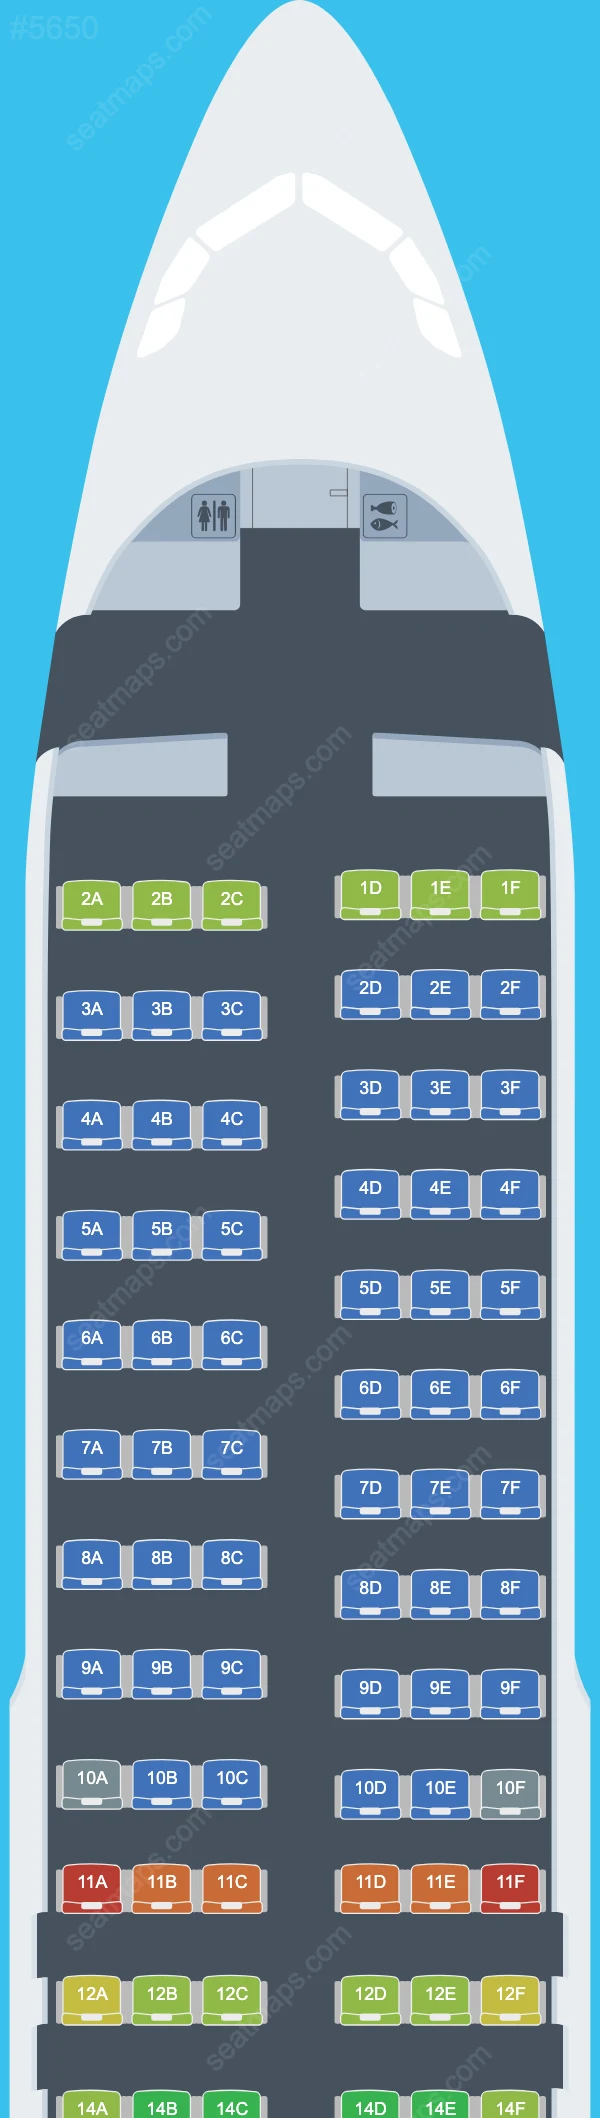 Allegiant Air Airbus A320 Seat Maps A320-200 V.2